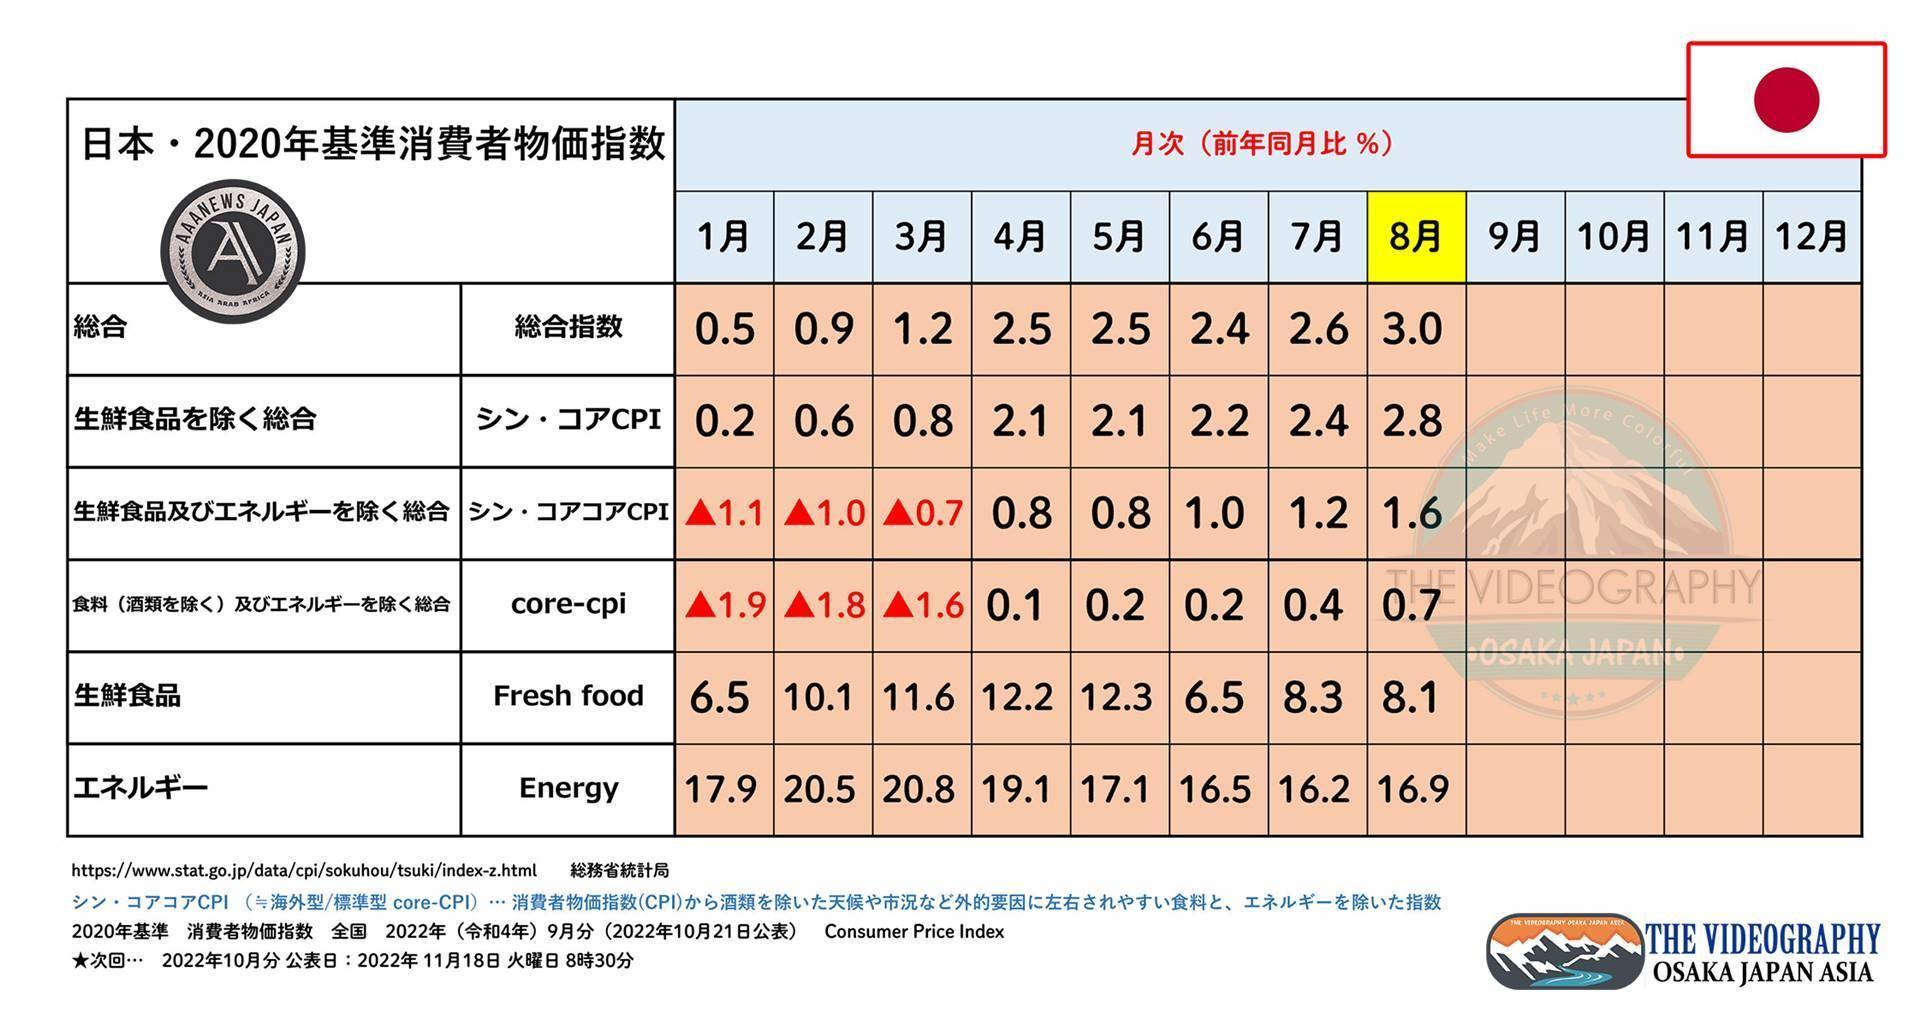 日本・2020年基準 消費者物価指数 ◆総合指数 3.0％ ◆生鮮食品を除く総合 コアCPI 2.6％ ◆生鮮食品及びエネルギーを除く総合 新コアコアCPI 1.6％ ◆総合指数 3.0％ ◆（日本版）シン・コアCPI 2.6％ ◆（日本版）シン・コアコアCPI 1.6％ （≒ 海外型/標準版 core-CPI・食料と燃料/エネルギーを除く） ・生鮮食品 Fresh Food 8.1% ・エネルギー Energy 16.9% ・食料（酒類除く）及びエネルギーを除く総合/core-CPI 0.7% https://videographyosaka.com/cpi-consumer-price-index-202208/